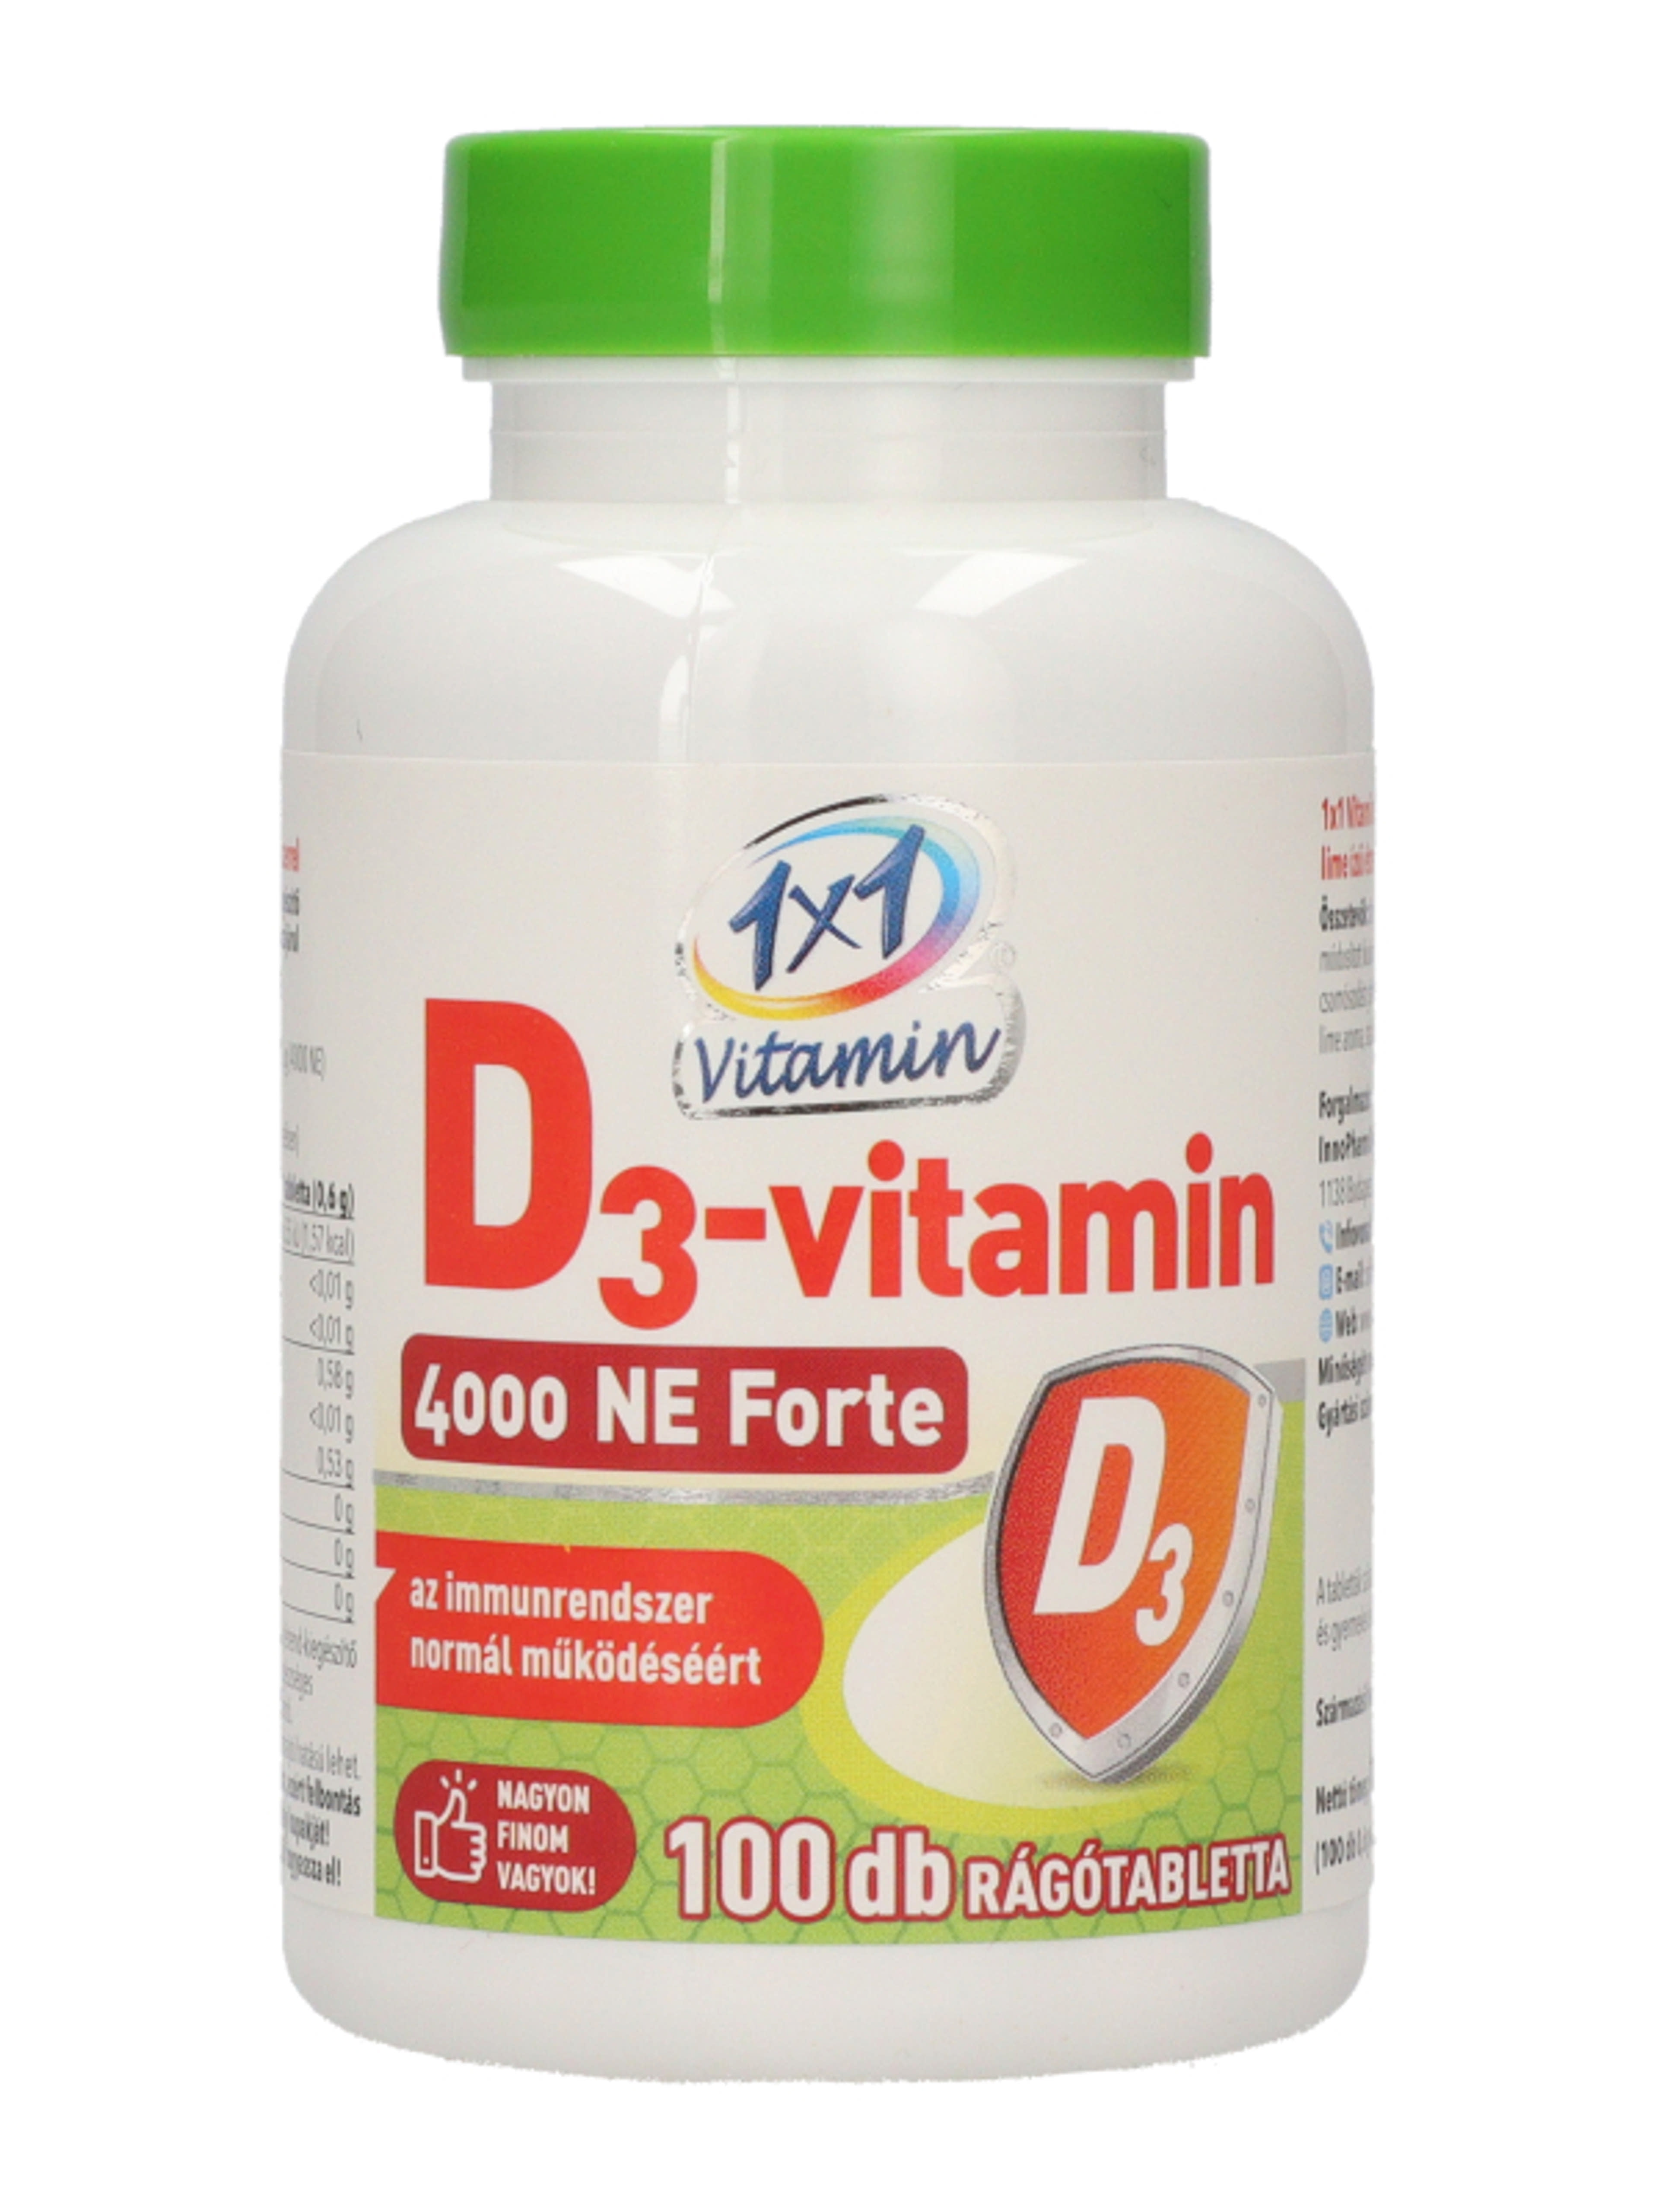 1x1 vitamin D3 4000 Ne forte rágótabletta - 100 db-2